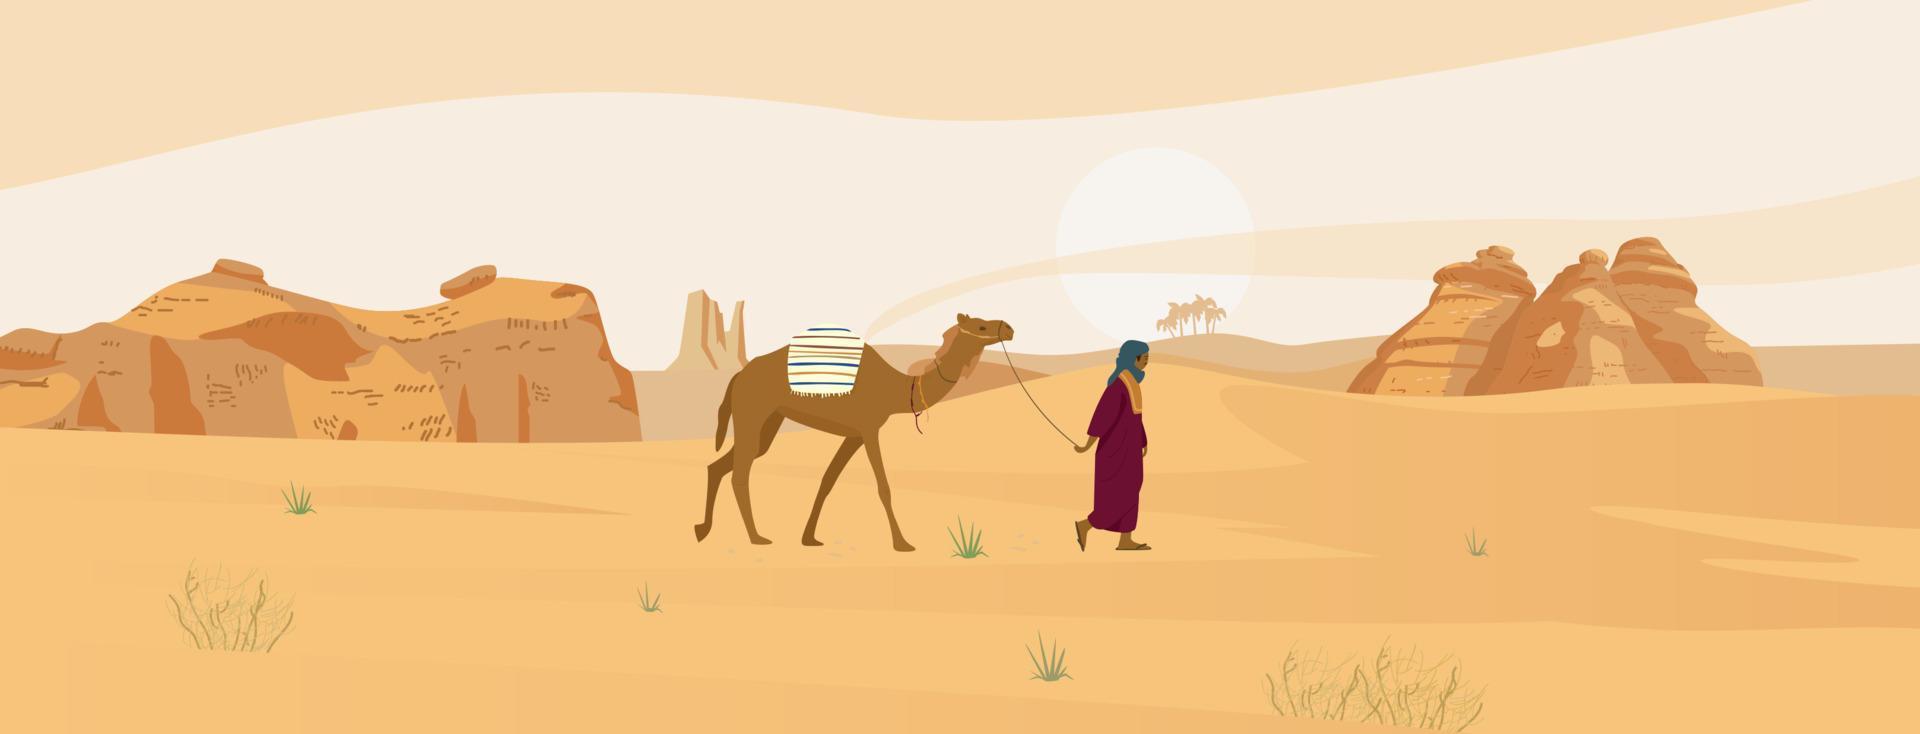 saudi arabien öken- landskap med beduin med kamel och sand rocks. vektor illustration.